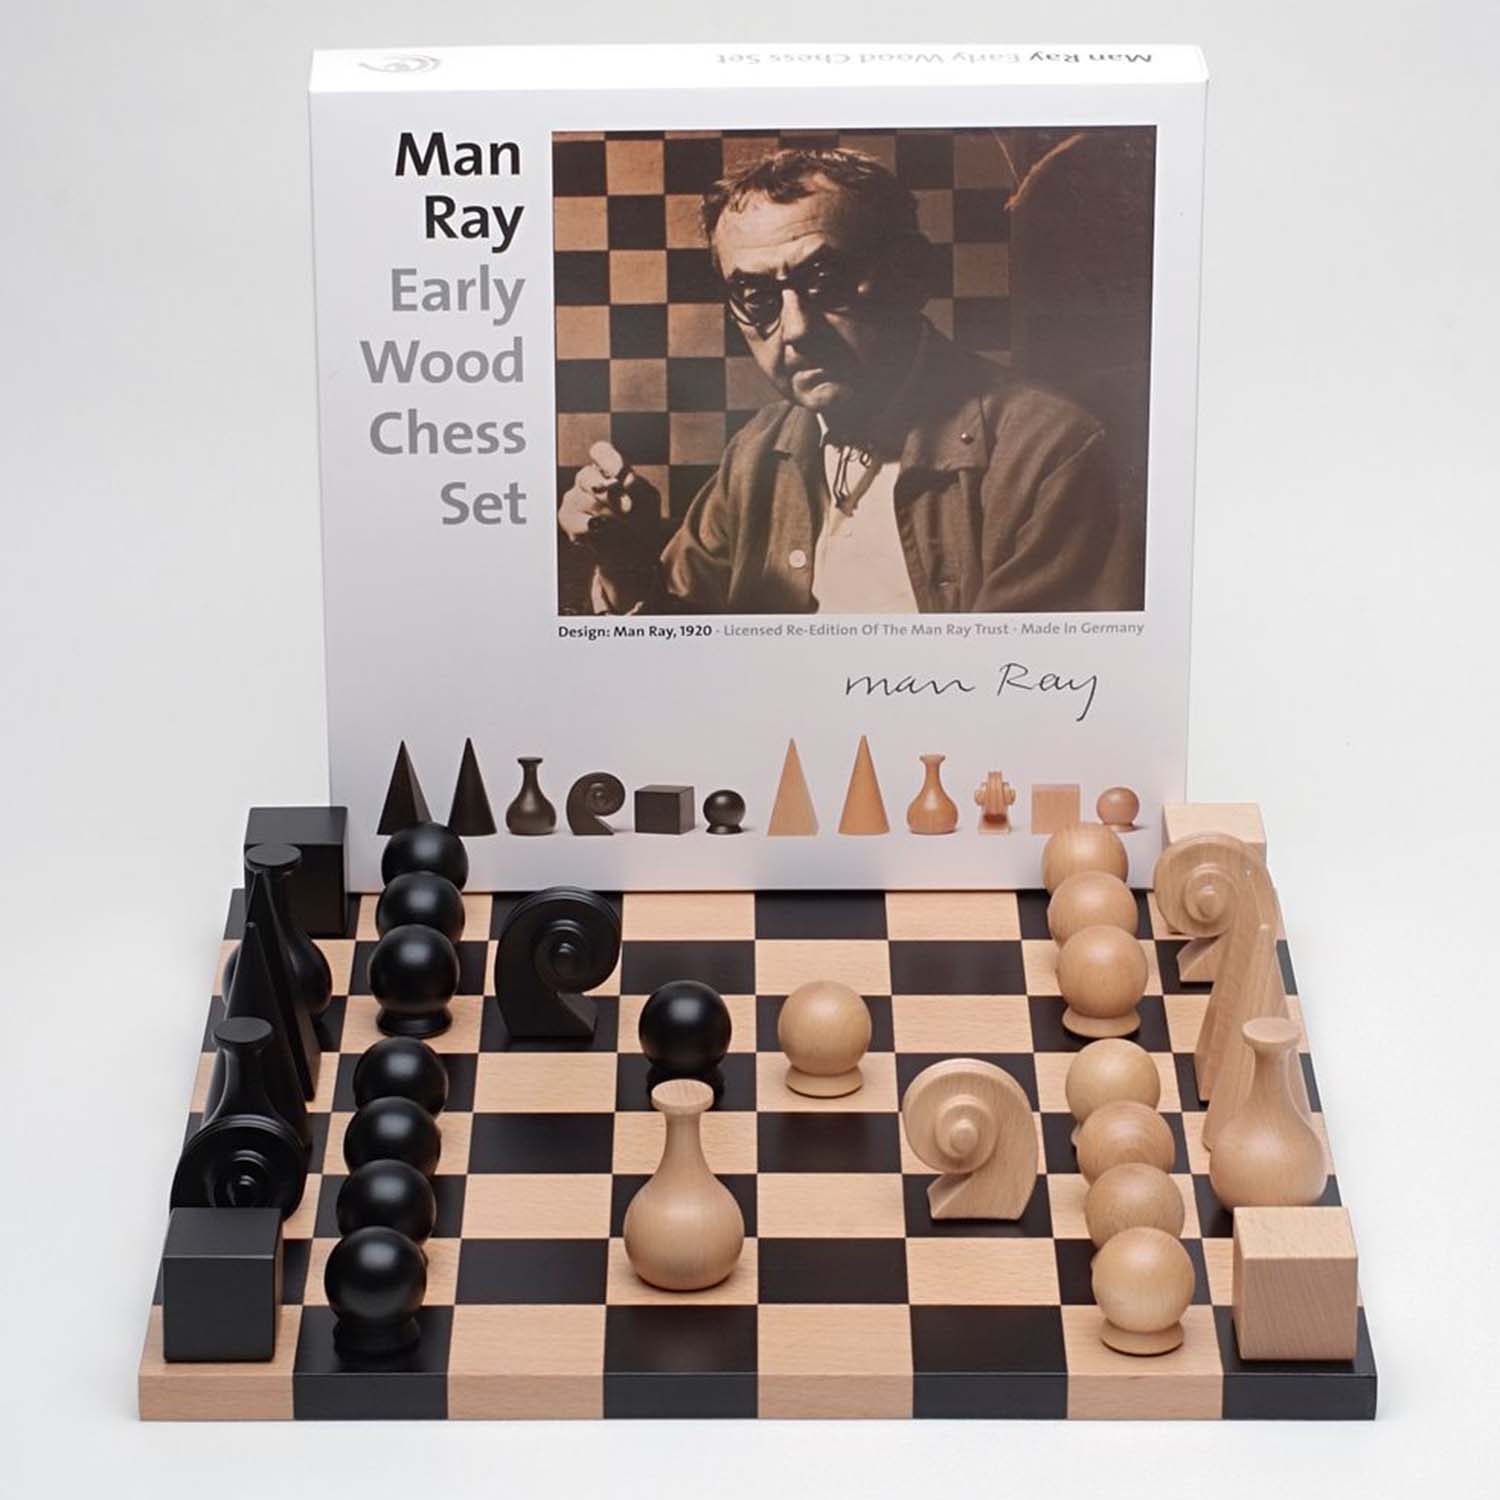 मैन रे द्वारा शतरंज का सेट की तस्वीर